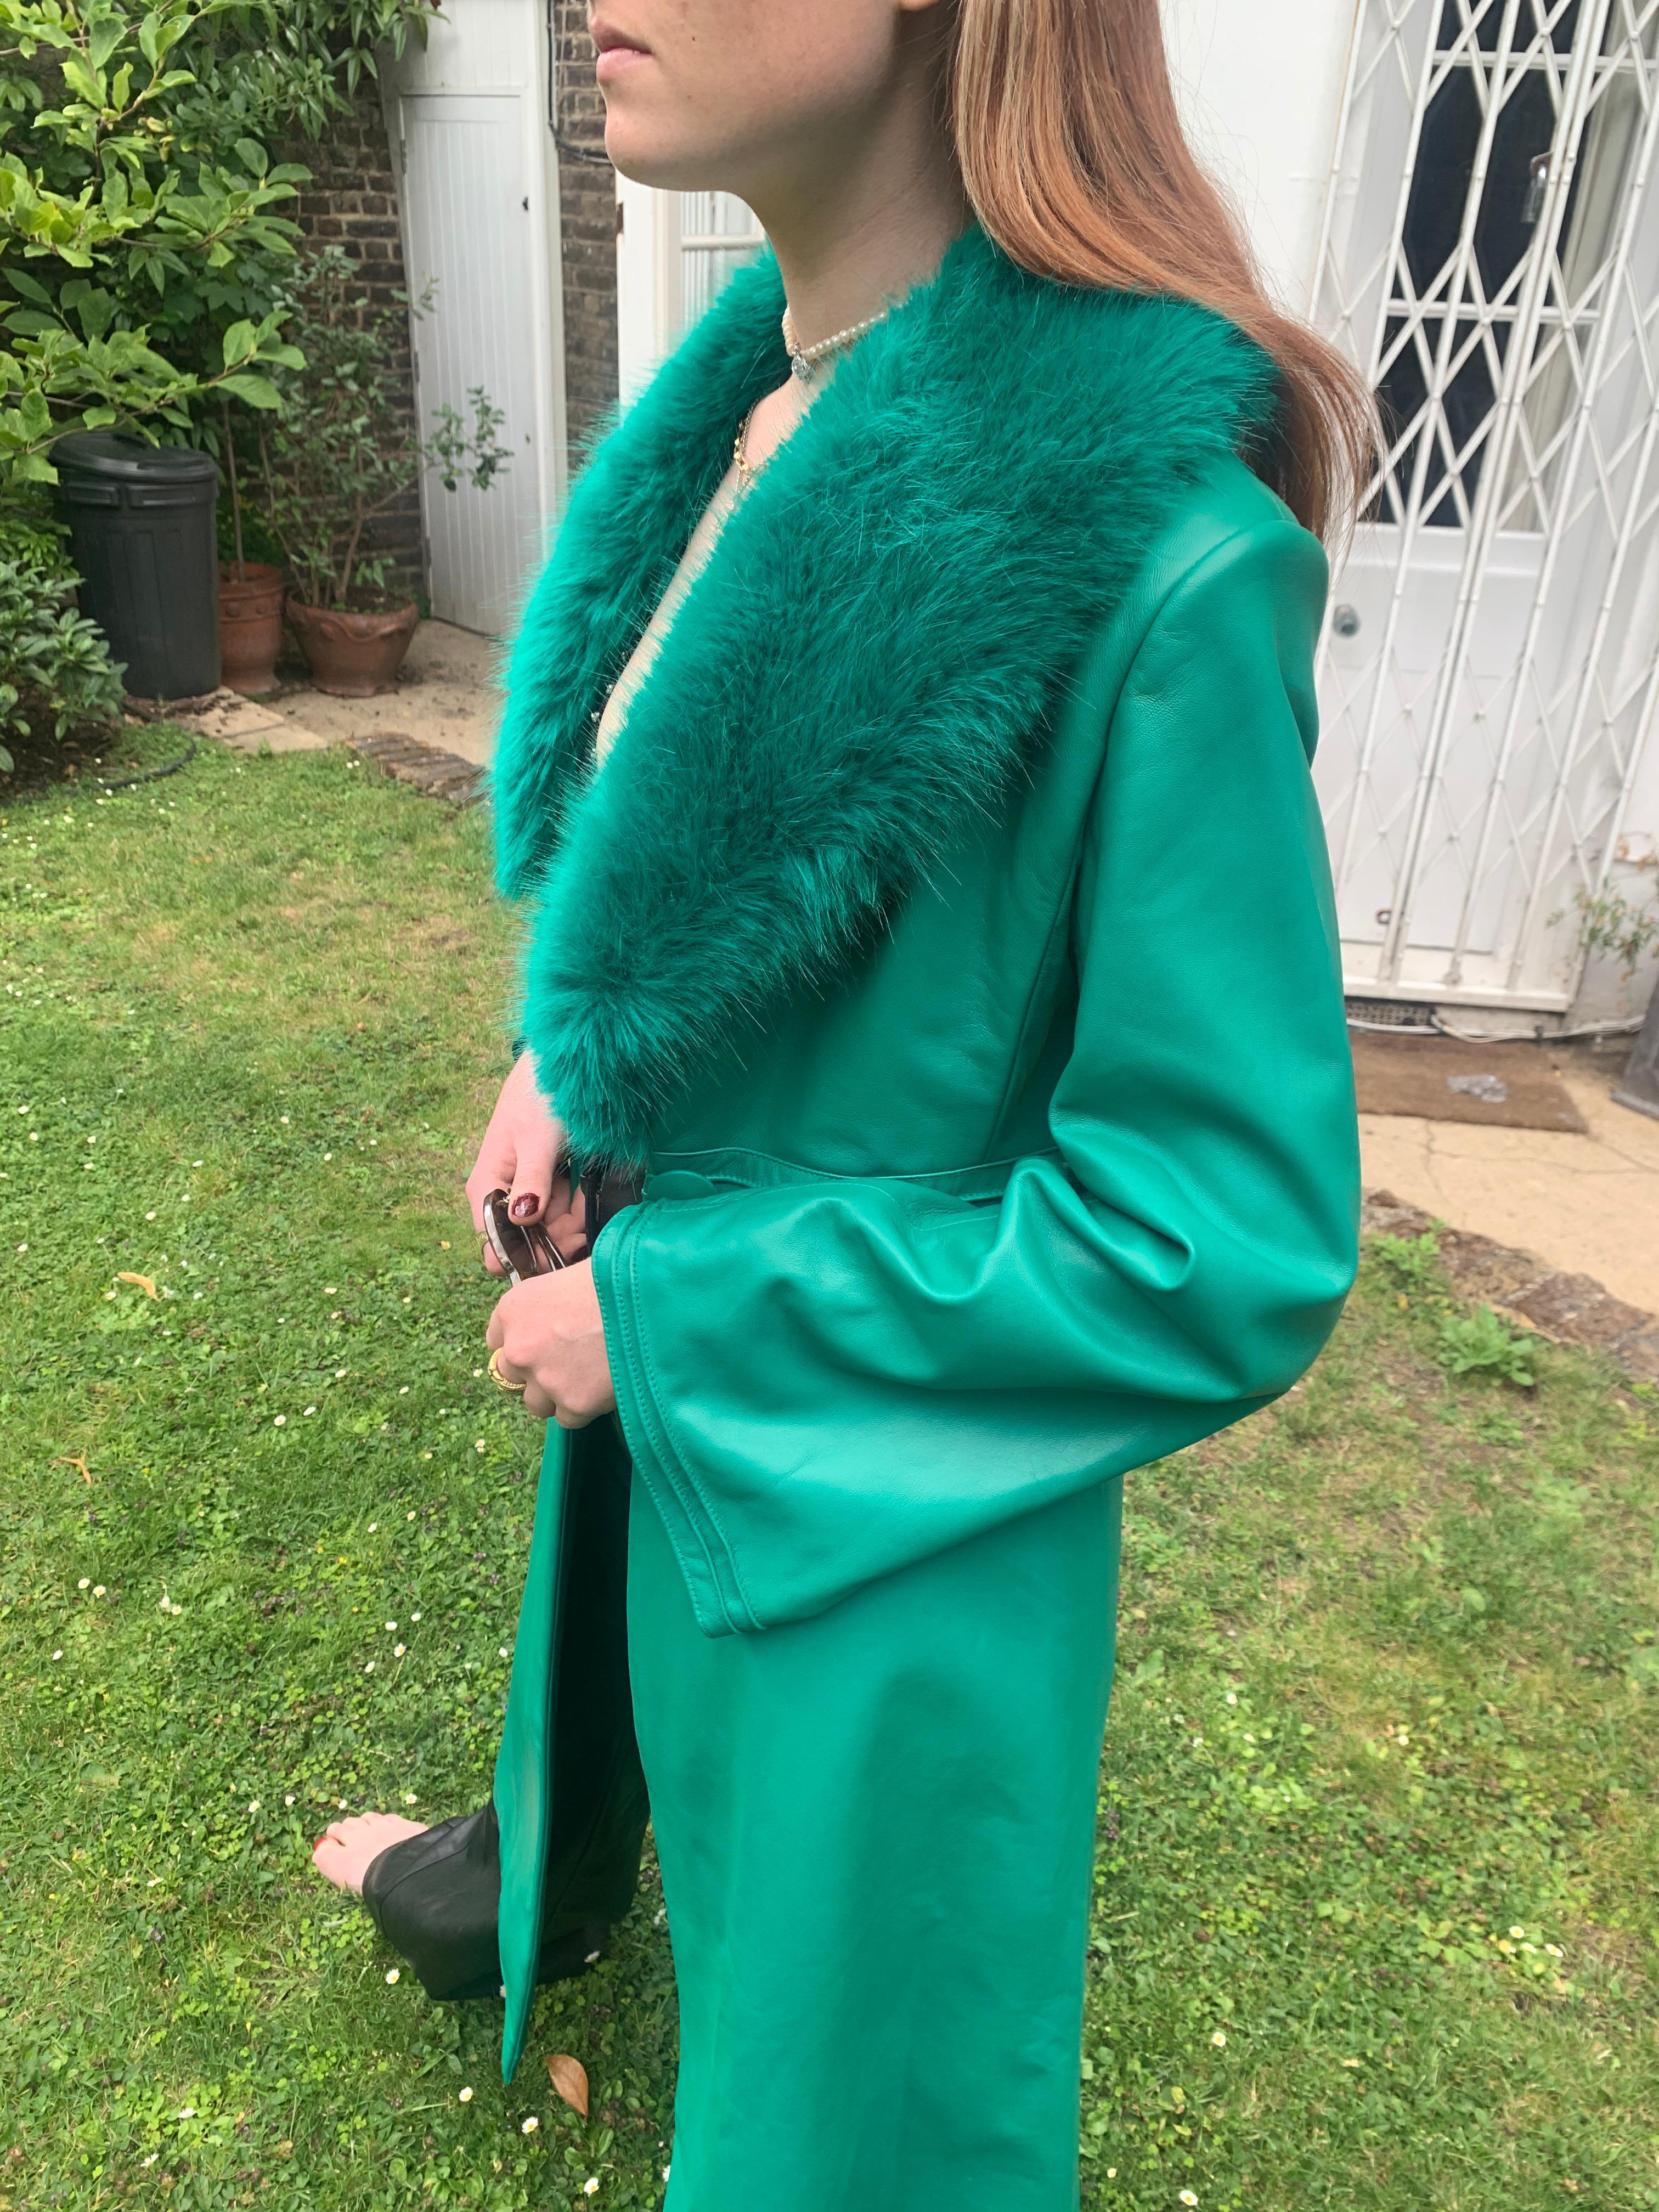 Verheyen London Edward Leather Coat in Emerald Green & Green Faux Fur - Size 8 UK 

Le manteau en cuir Edward créé par Verheyen London est un modèle romantique inspiré des années 1970 et de l'ère édouardienne de la mode.  Un design intemporel à